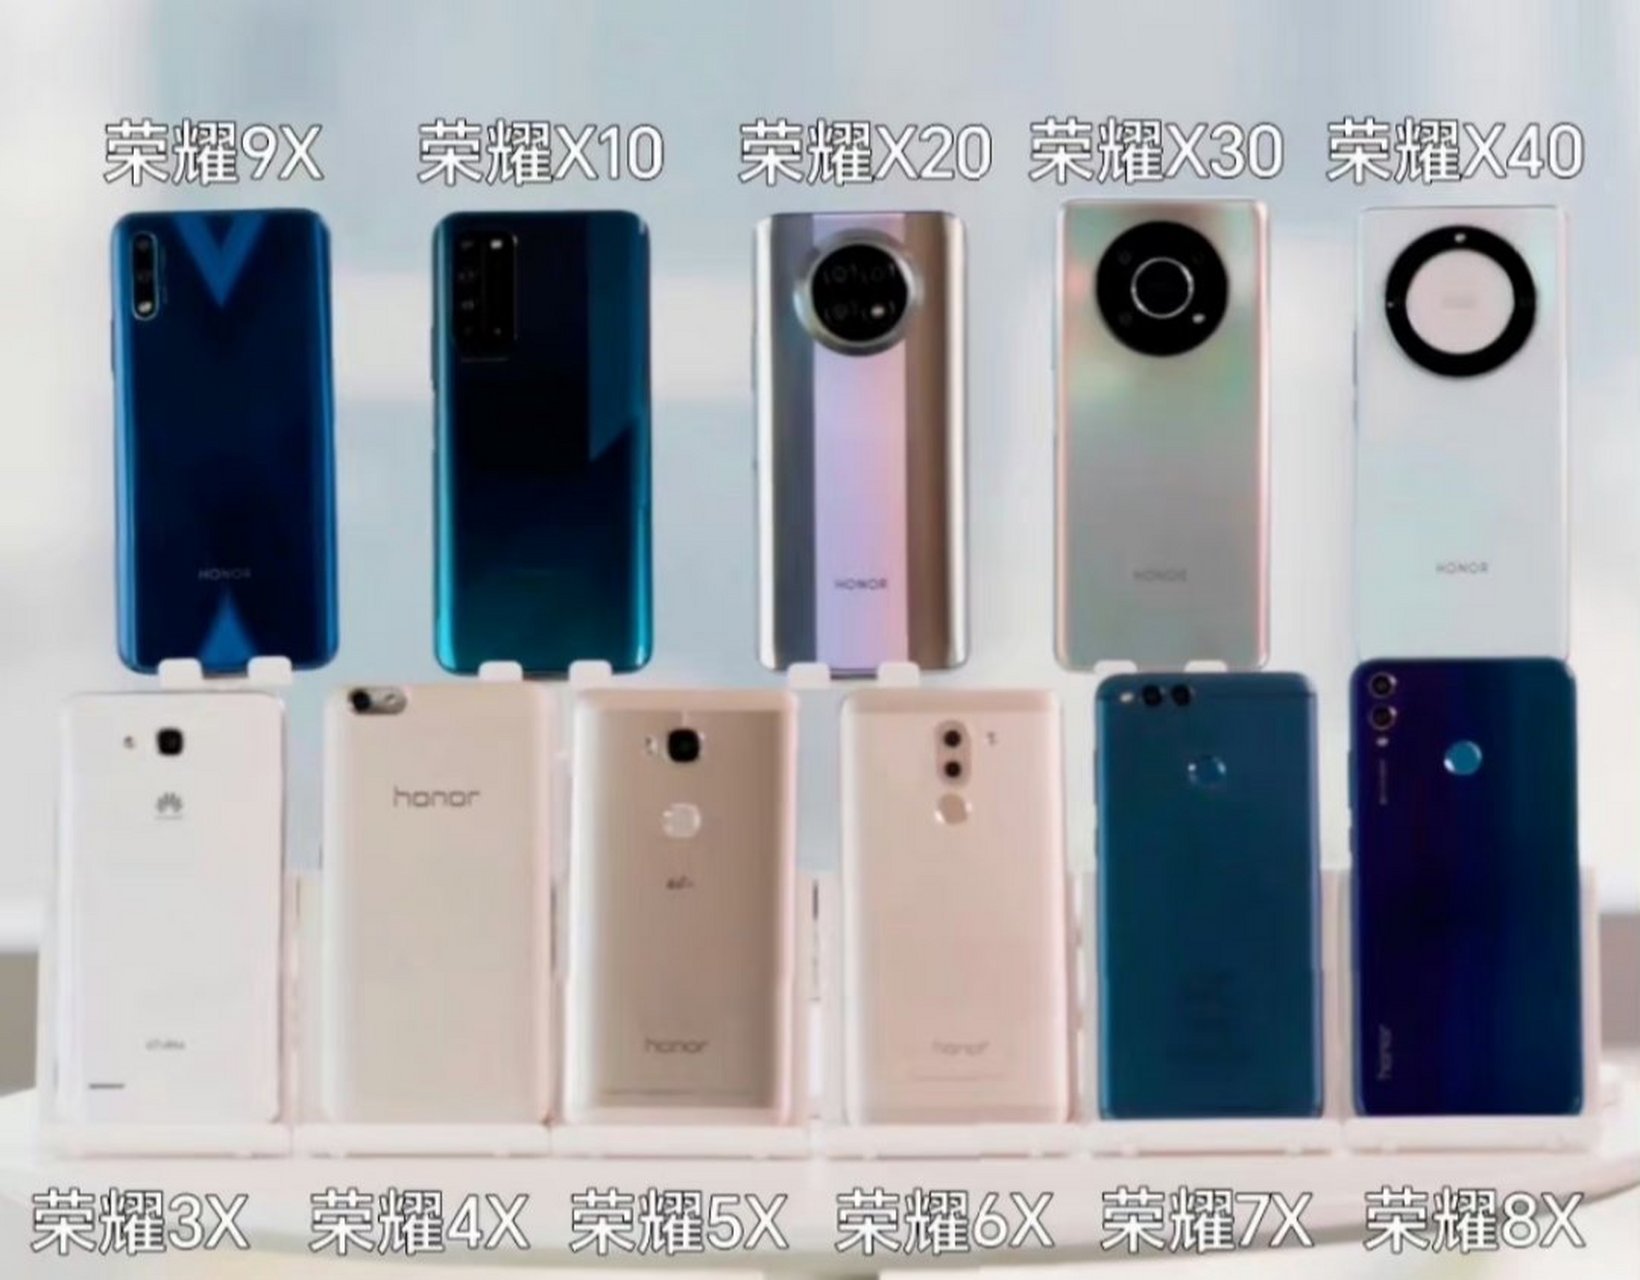 荣耀手机近期展示了历代荣耀x系列产品,很多产品都非常经典,但荣耀9x